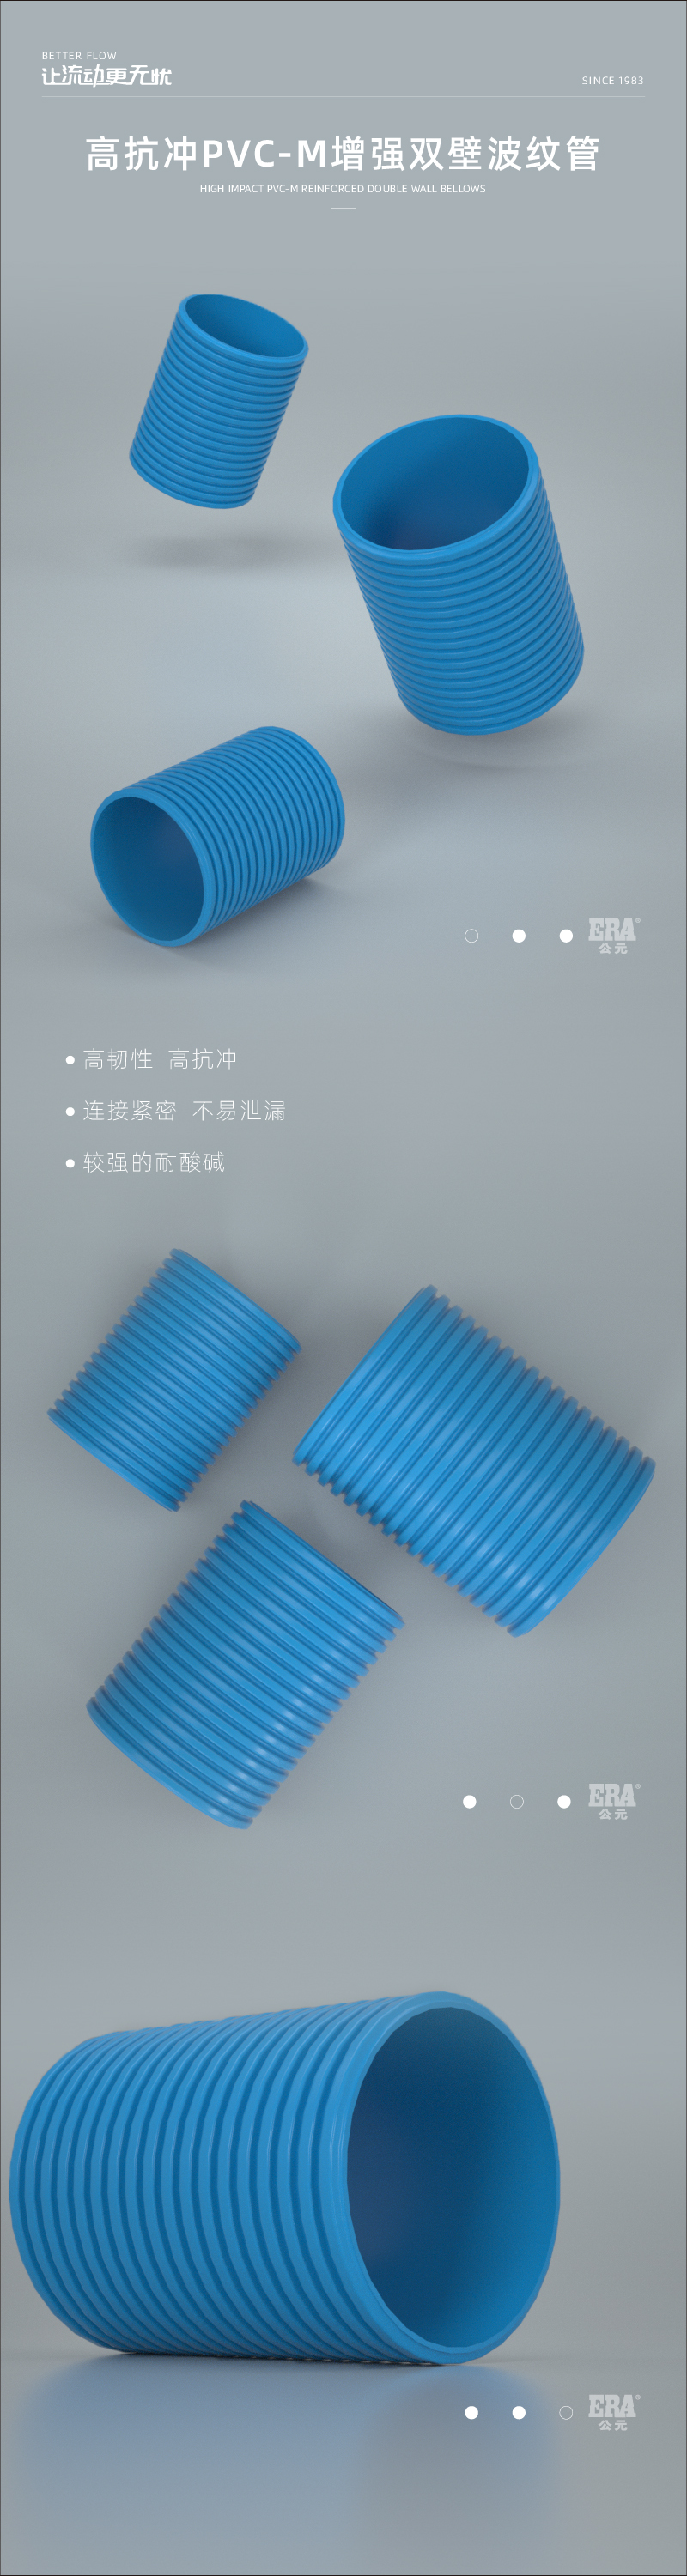 高抗冲PVC-M增强双壁波纹管 1_画板 1.jpg